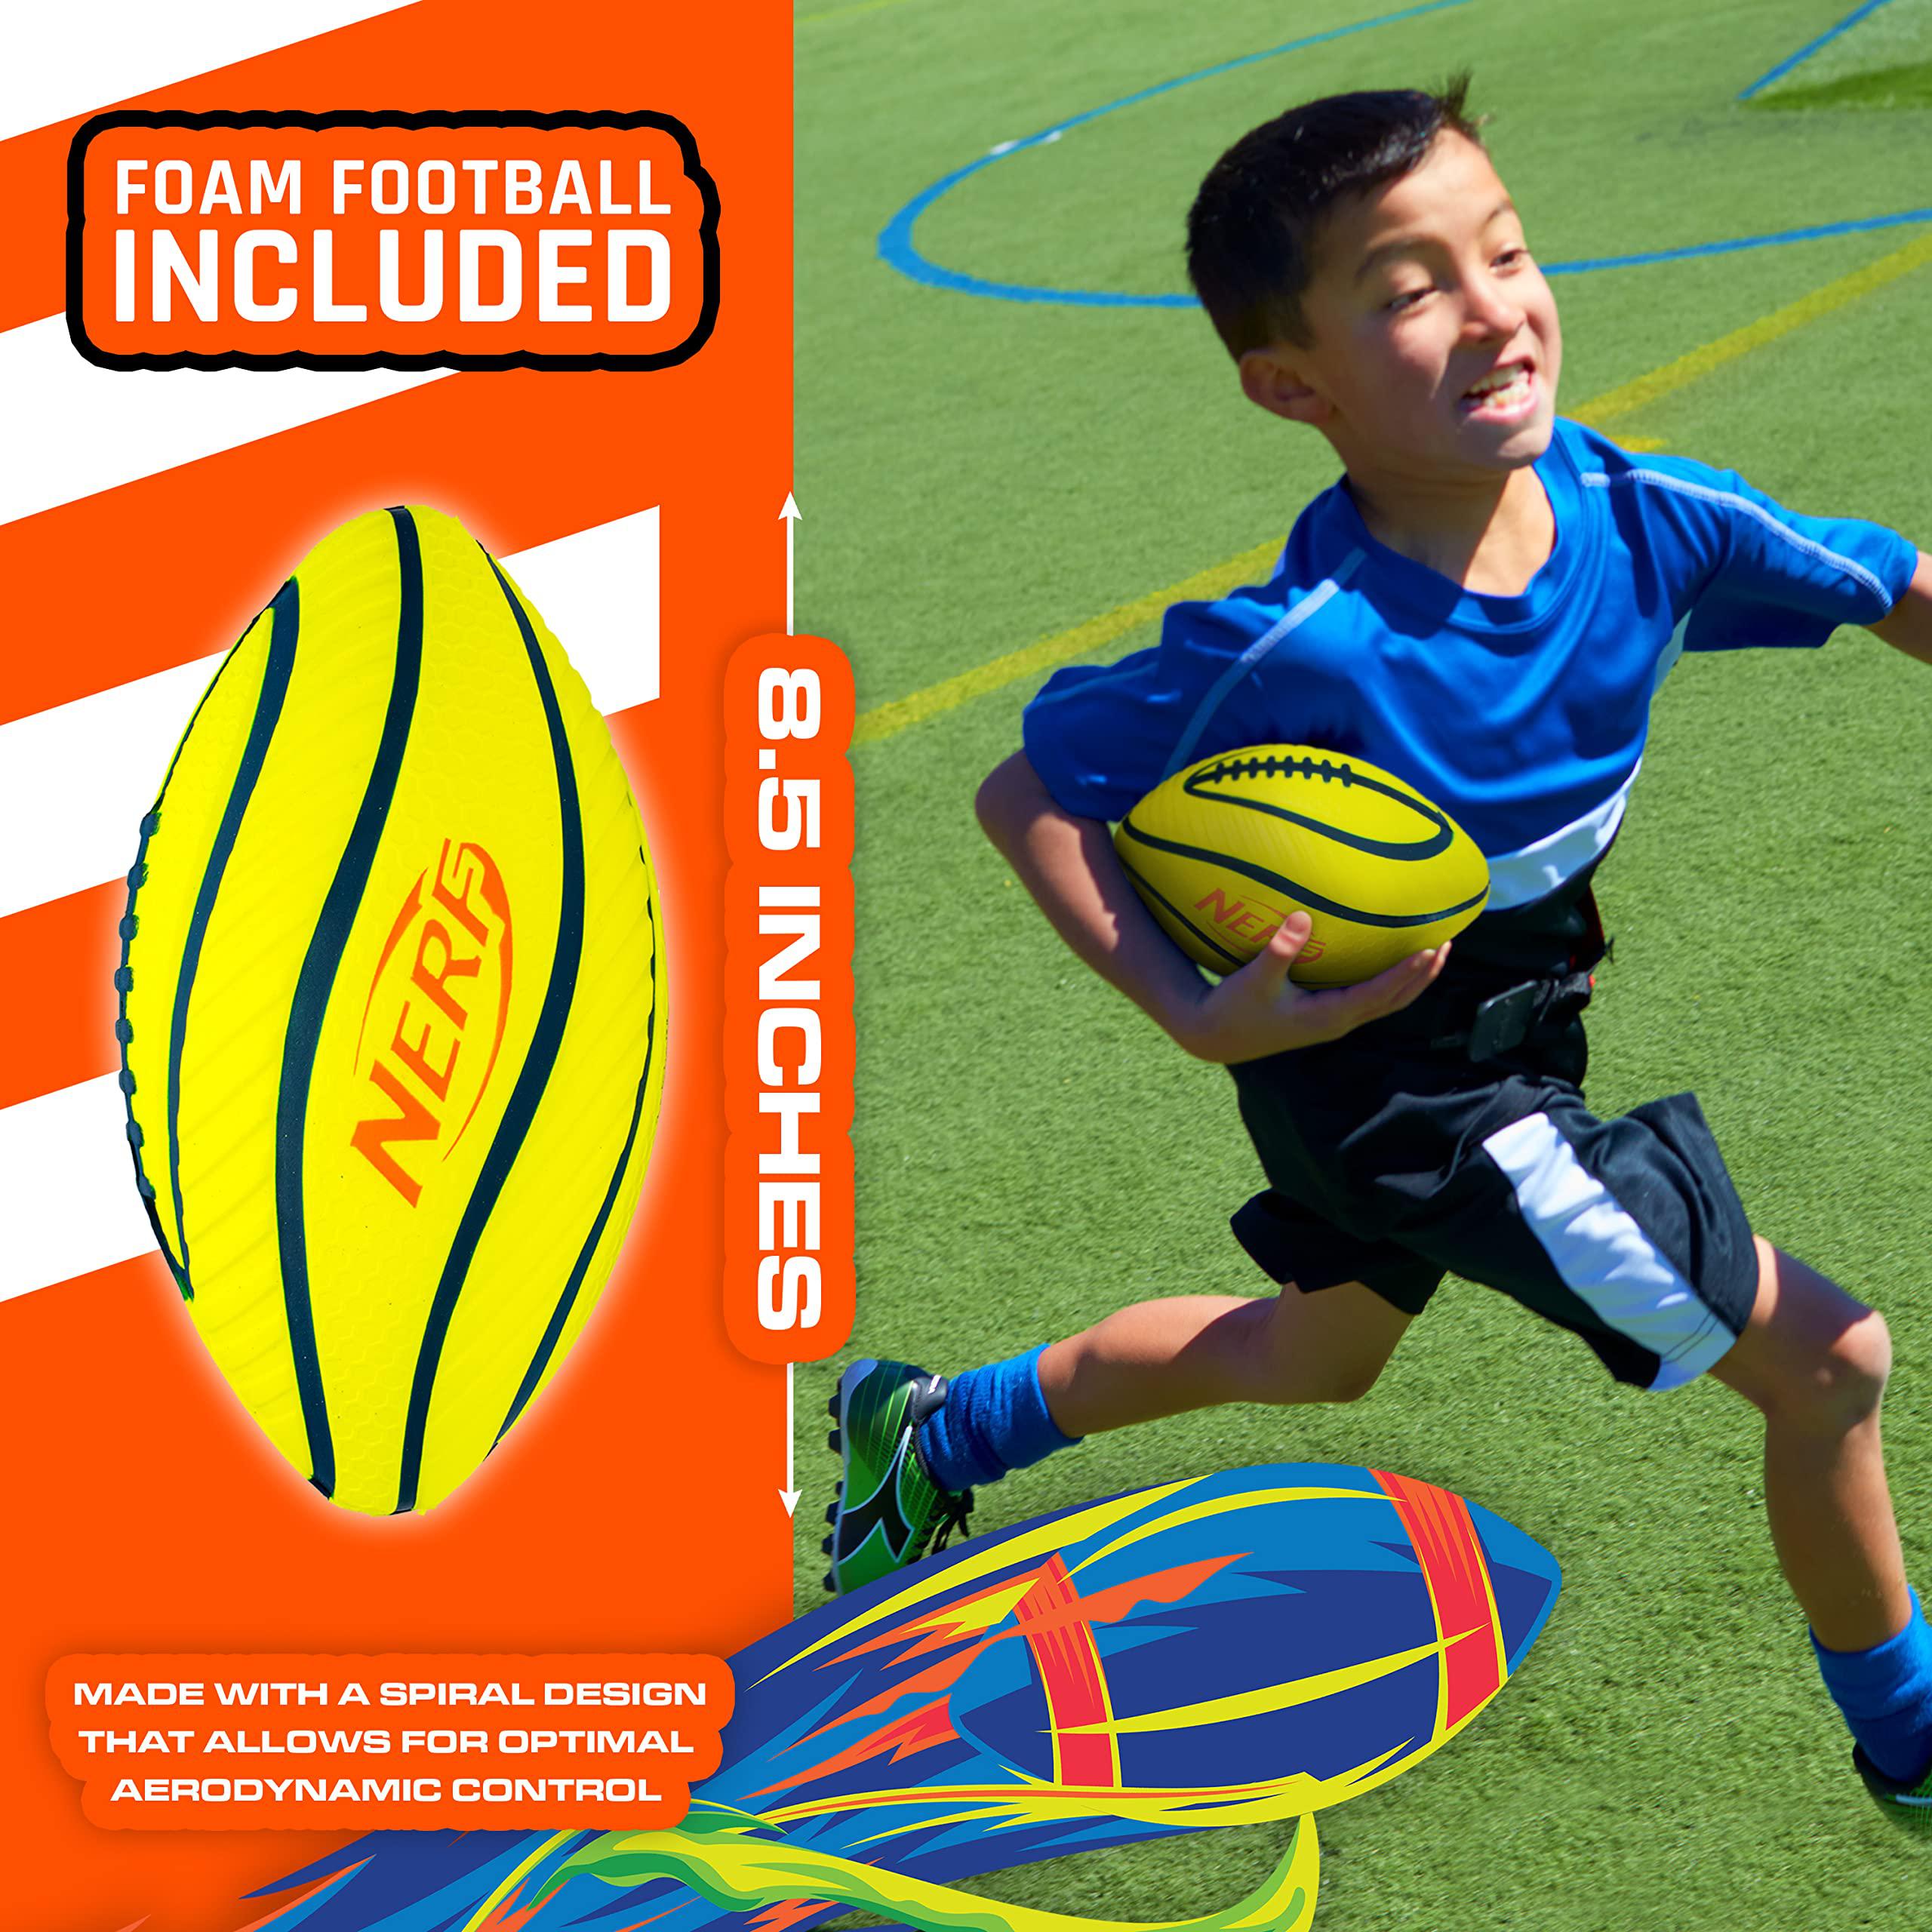 nerf 10 player flag football belts + football set - youth flag football belts + junior foam football for kids - full flag foo